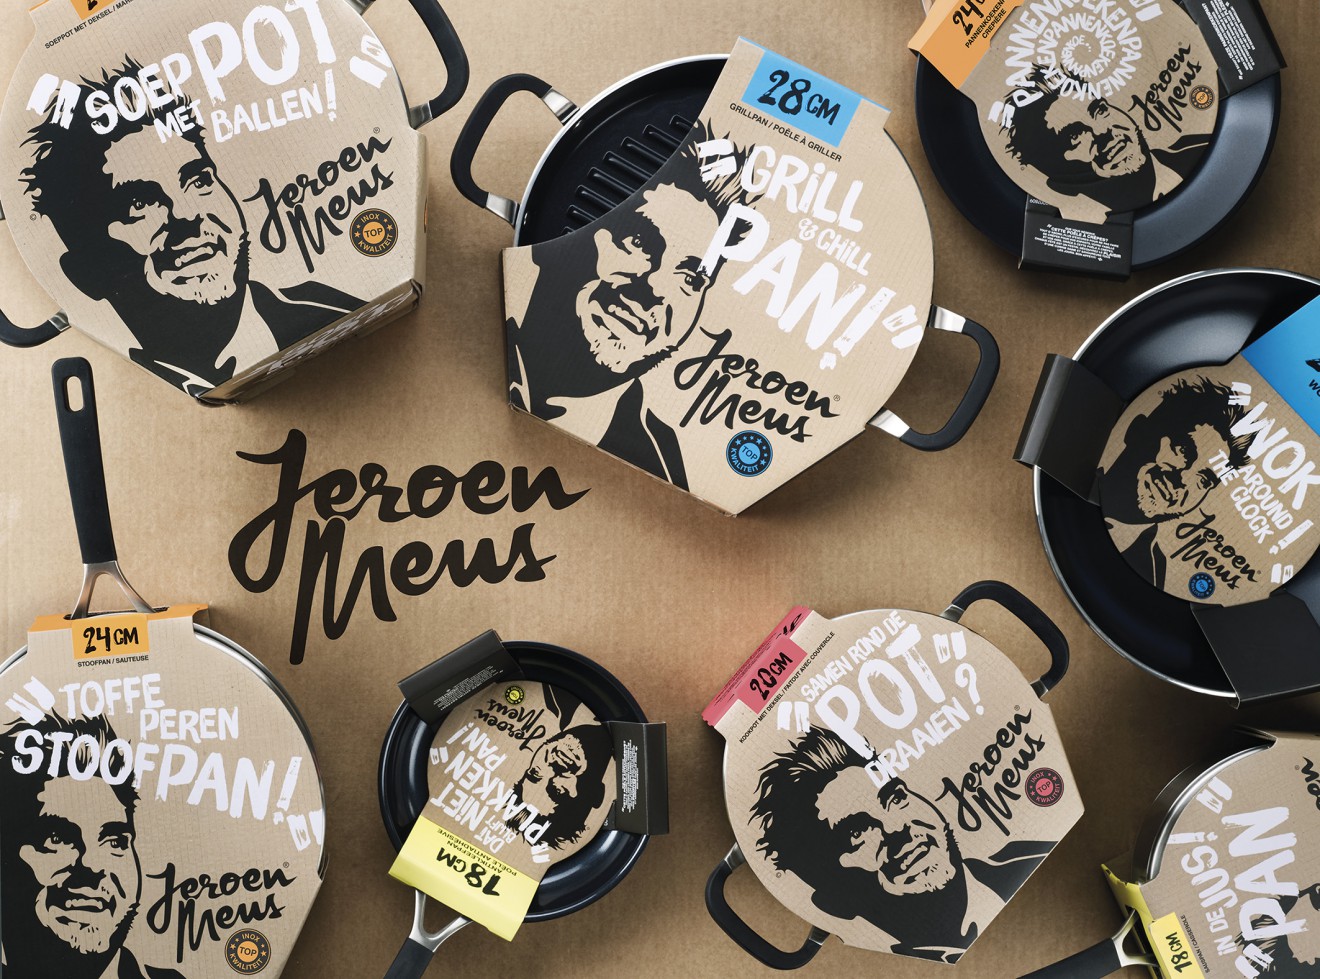 Quatre Mains package design - Jeroen Meus, Pot, Pan